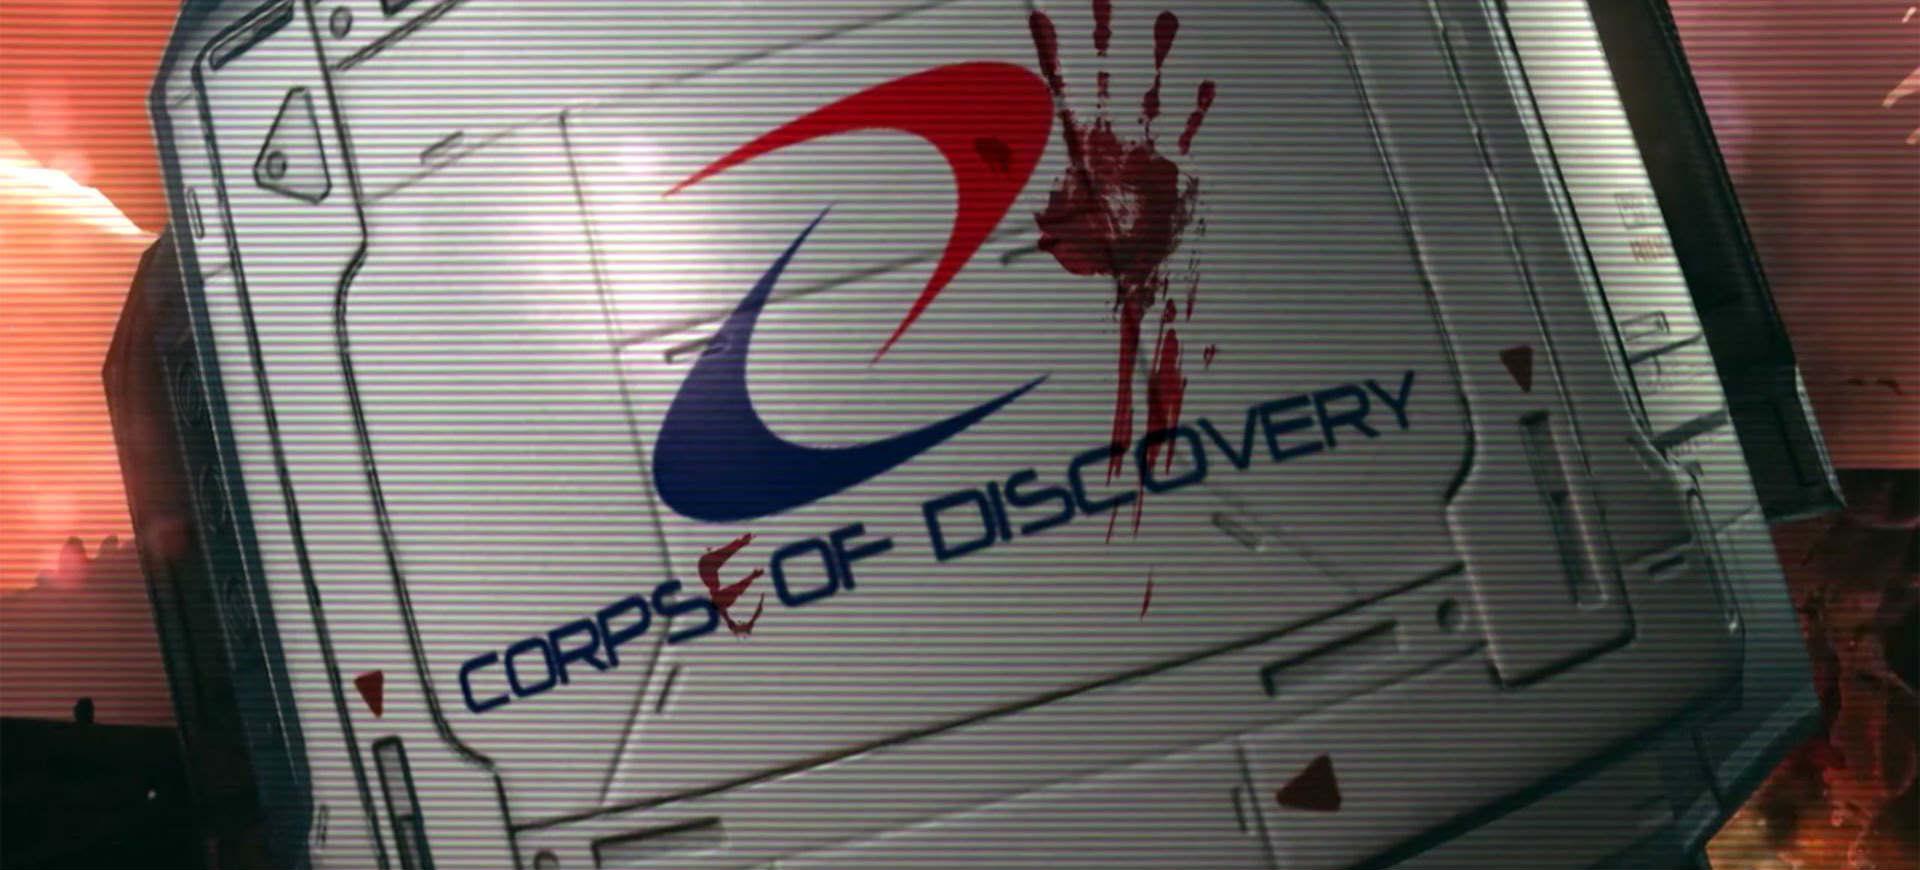 Corps of Discovery - Đánh giá game